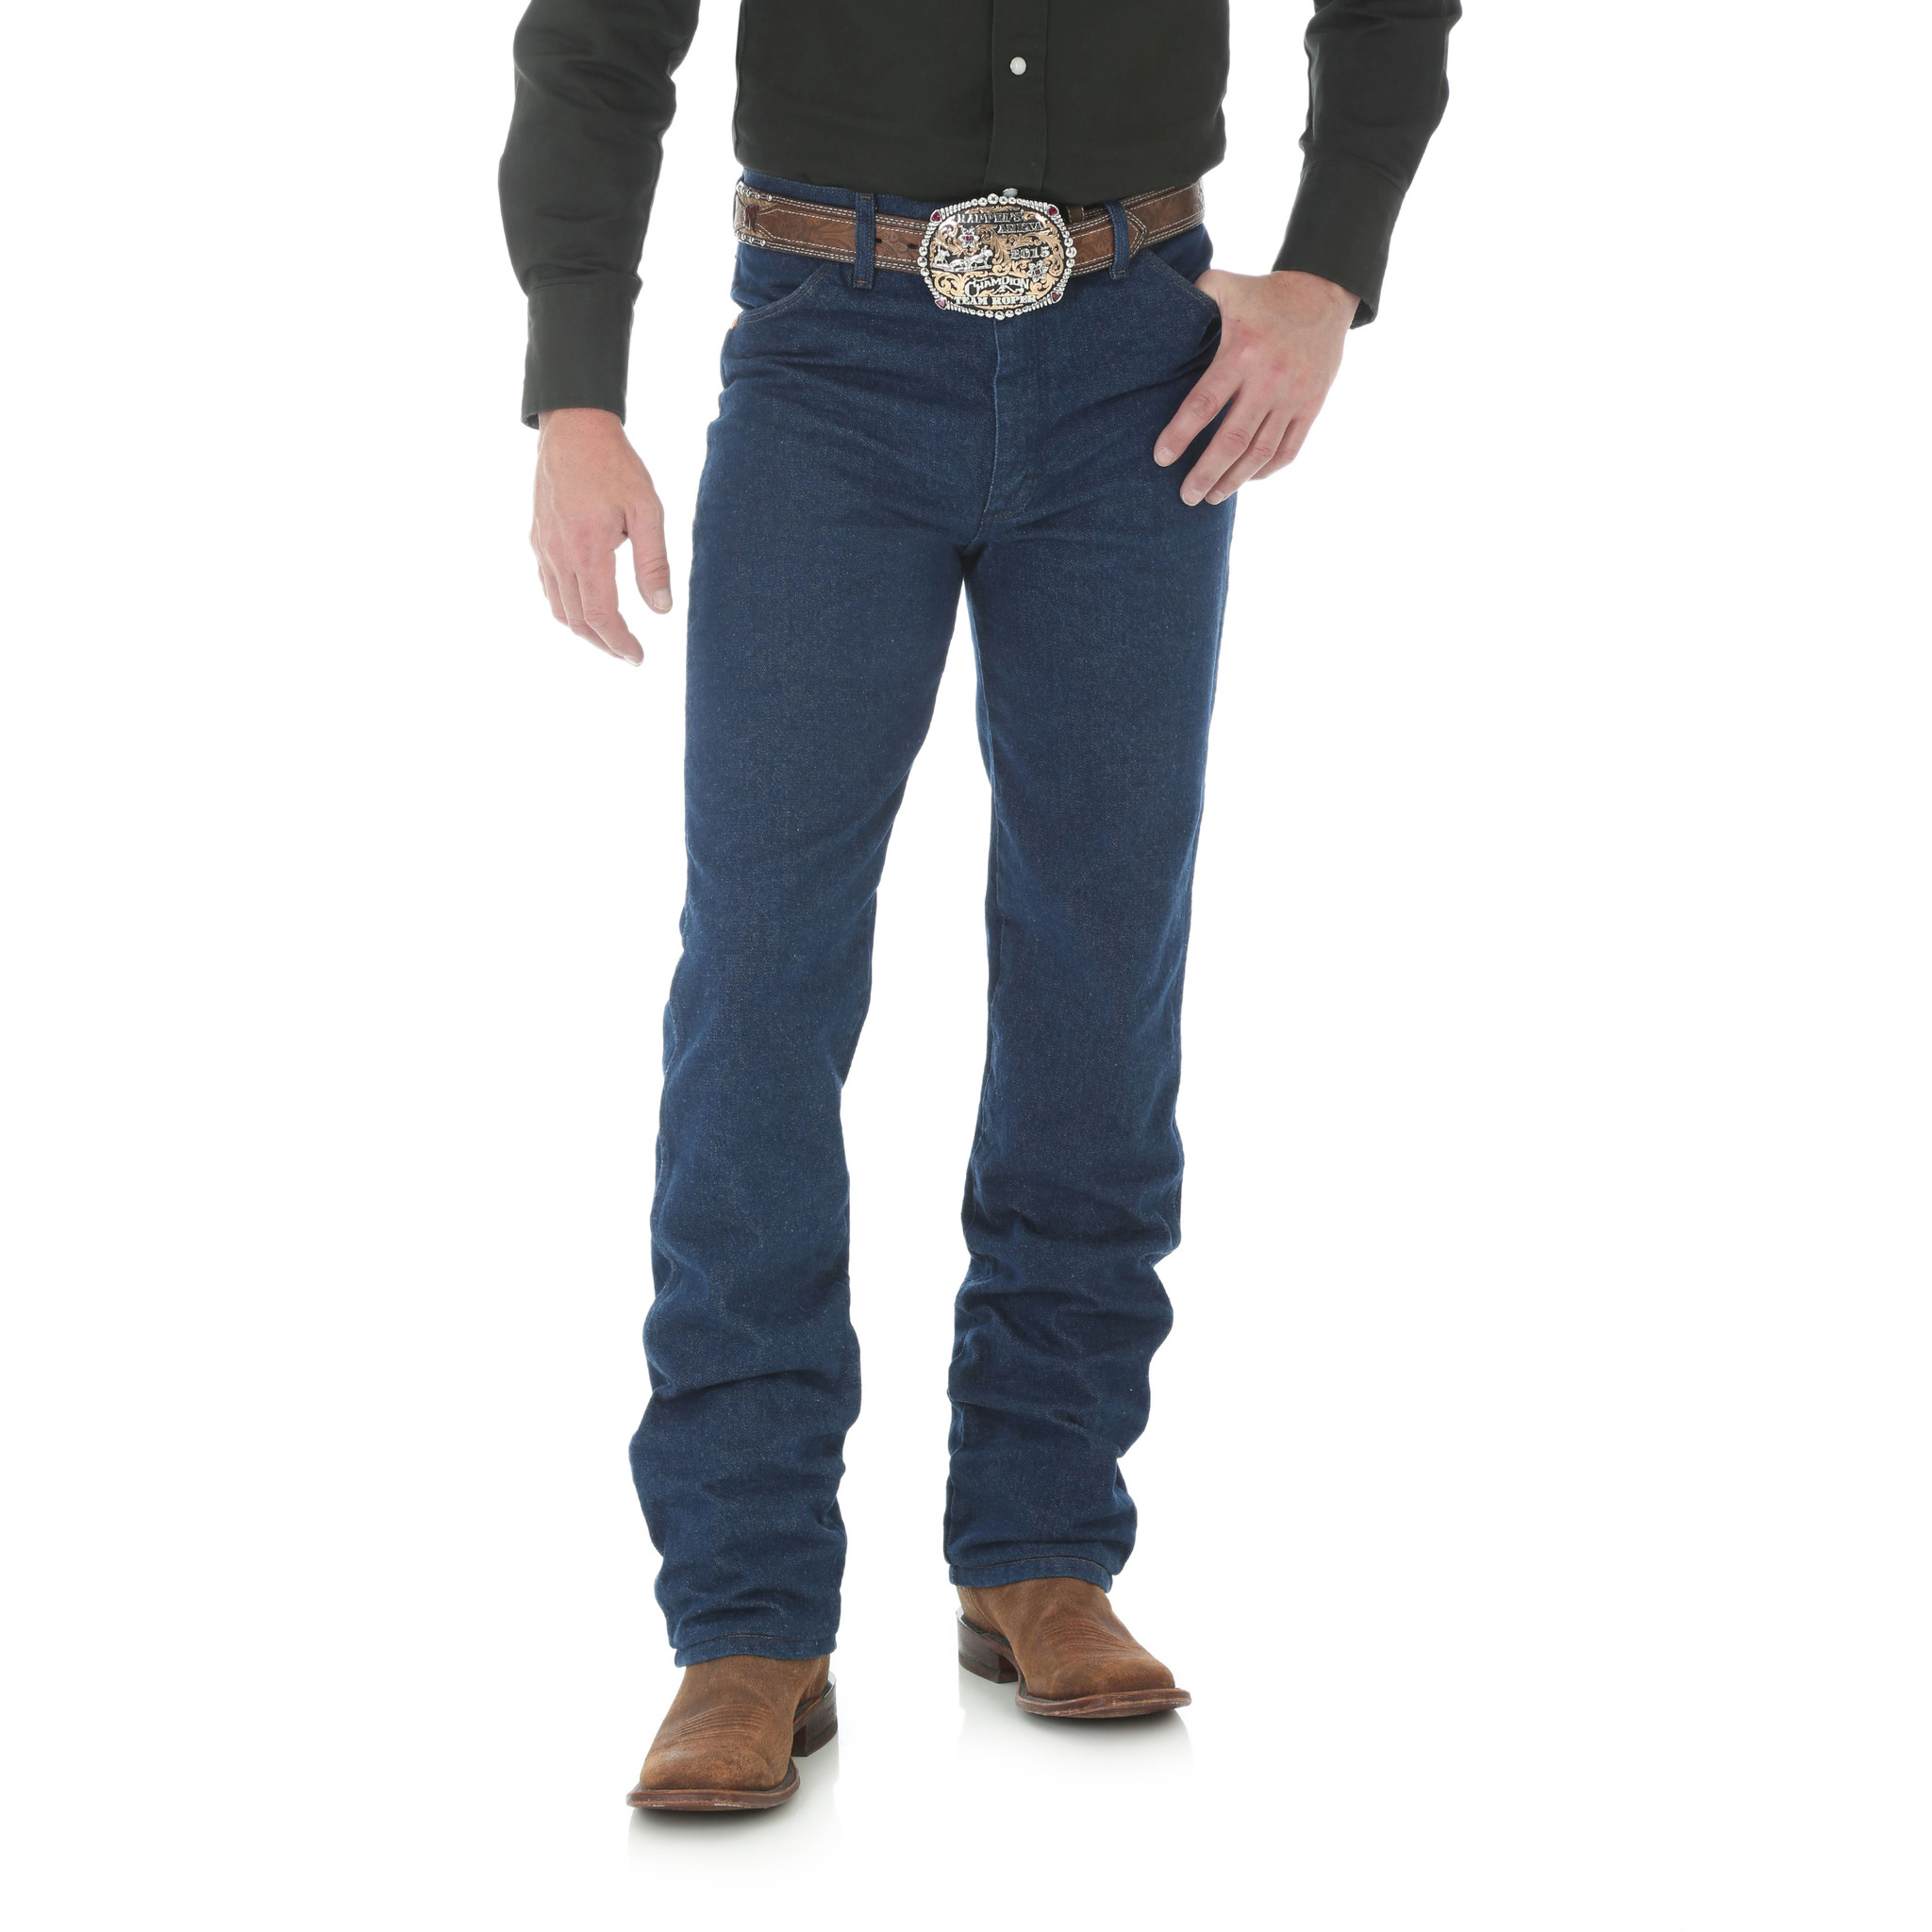 New Wrangler 936 Cowboy Cut Slim Fit Jeans Men's Sizes Rigid